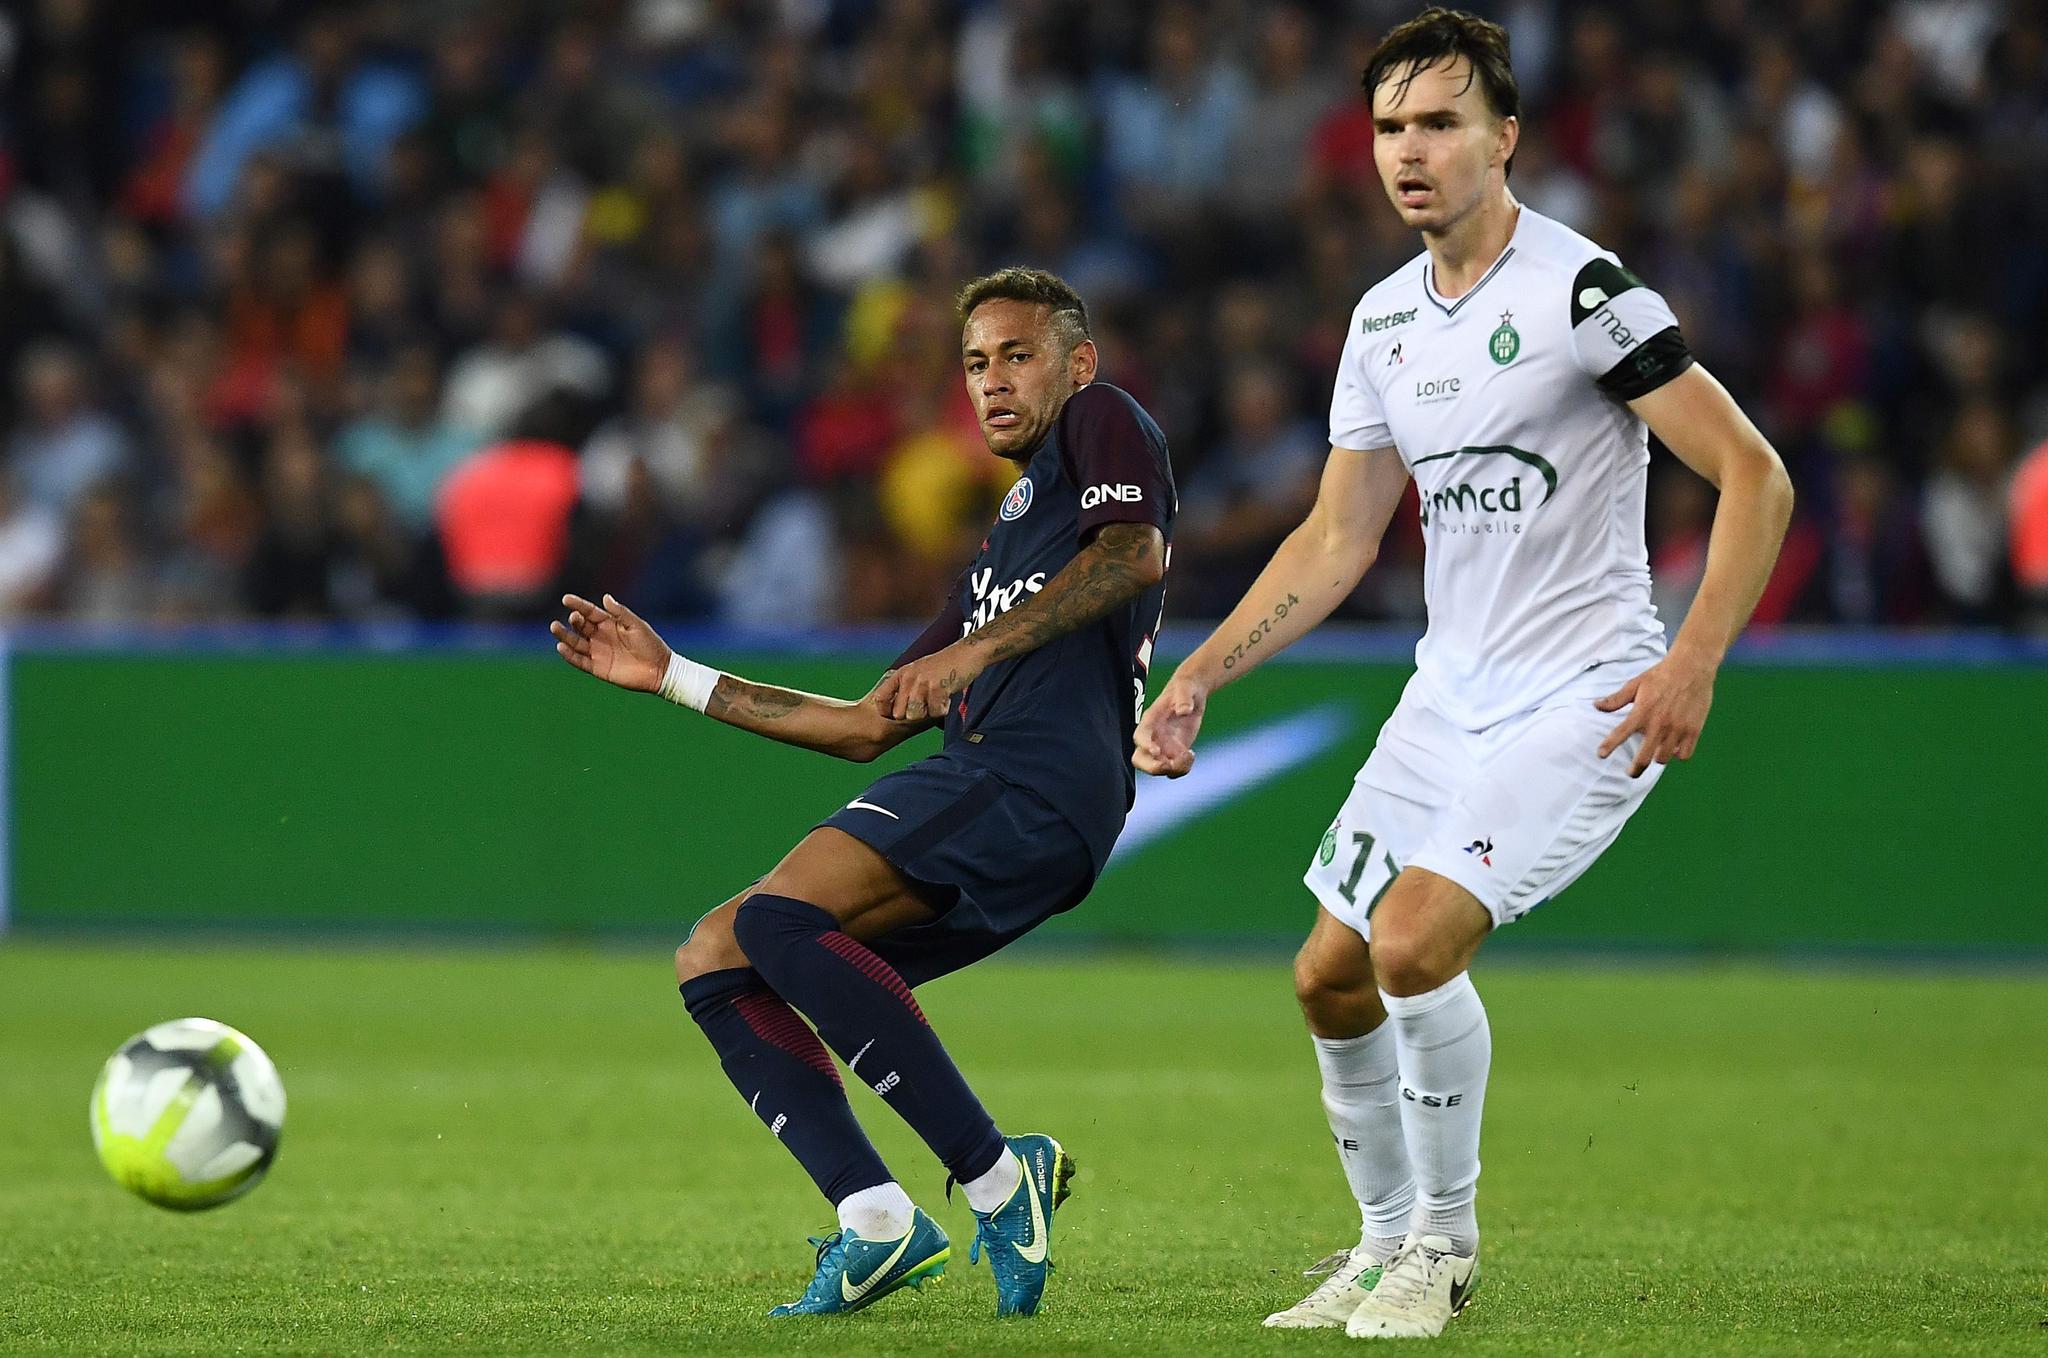 STJERNEMØTE: I Frankrike ble Ole Selnæs en sentral del av St. Etienne. Her fra et møte med PSG og Neymar i 2017. 